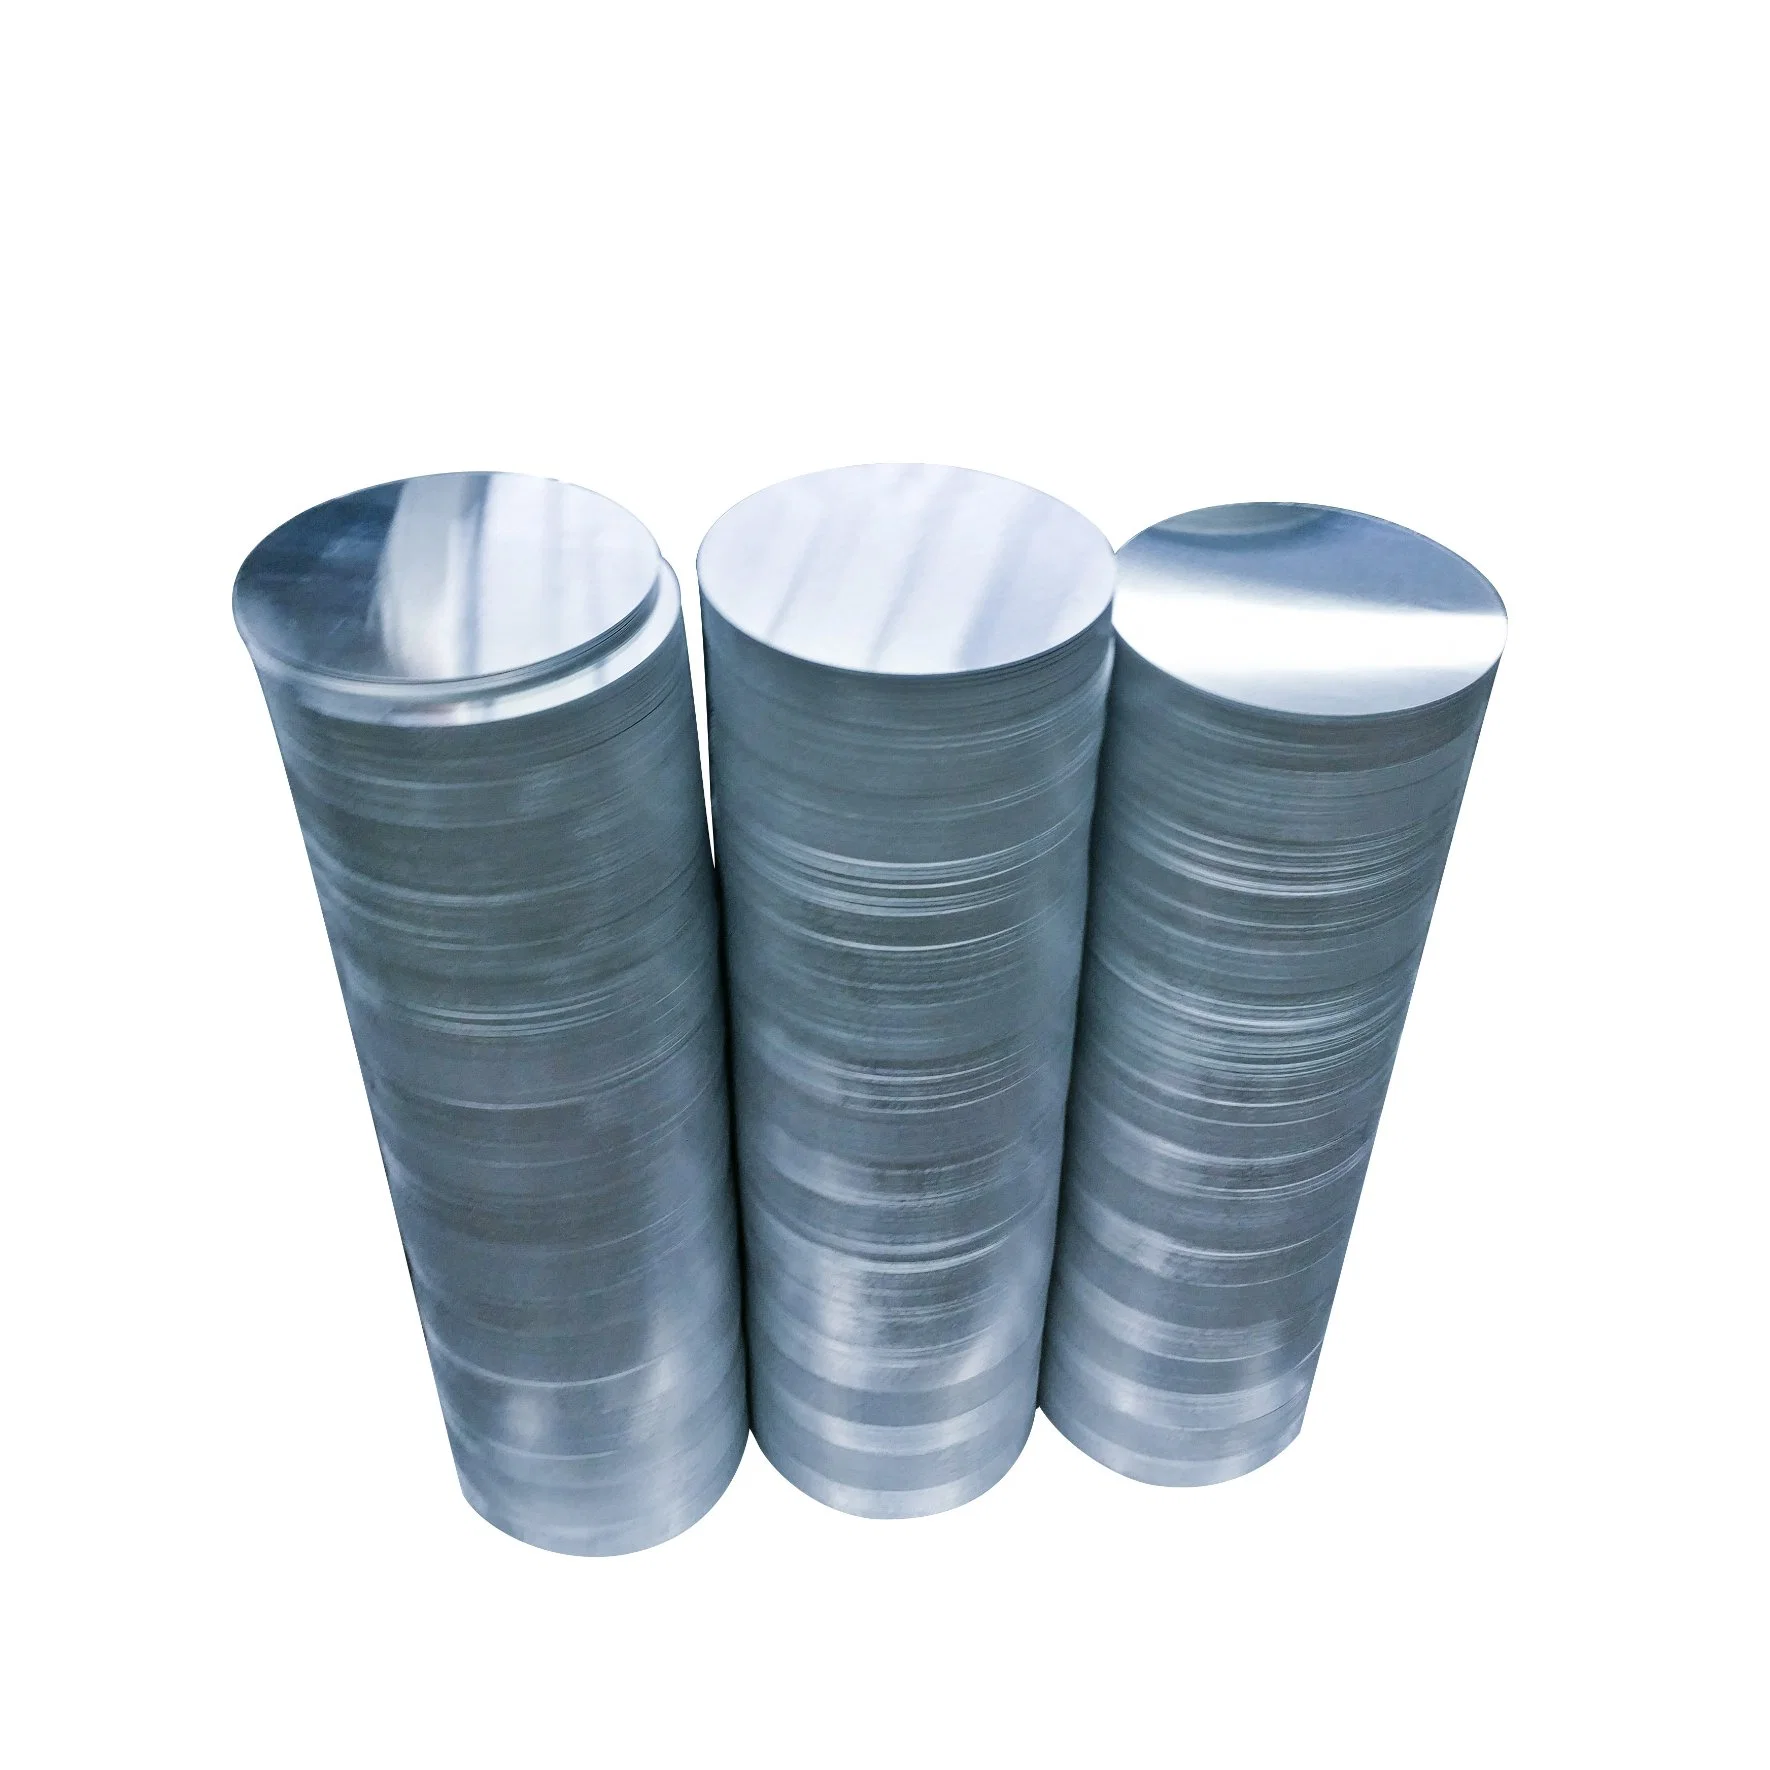 Aluminio de aleación de aluminio de alta calidad de hoja redonda de aluminio proveedores de materiales